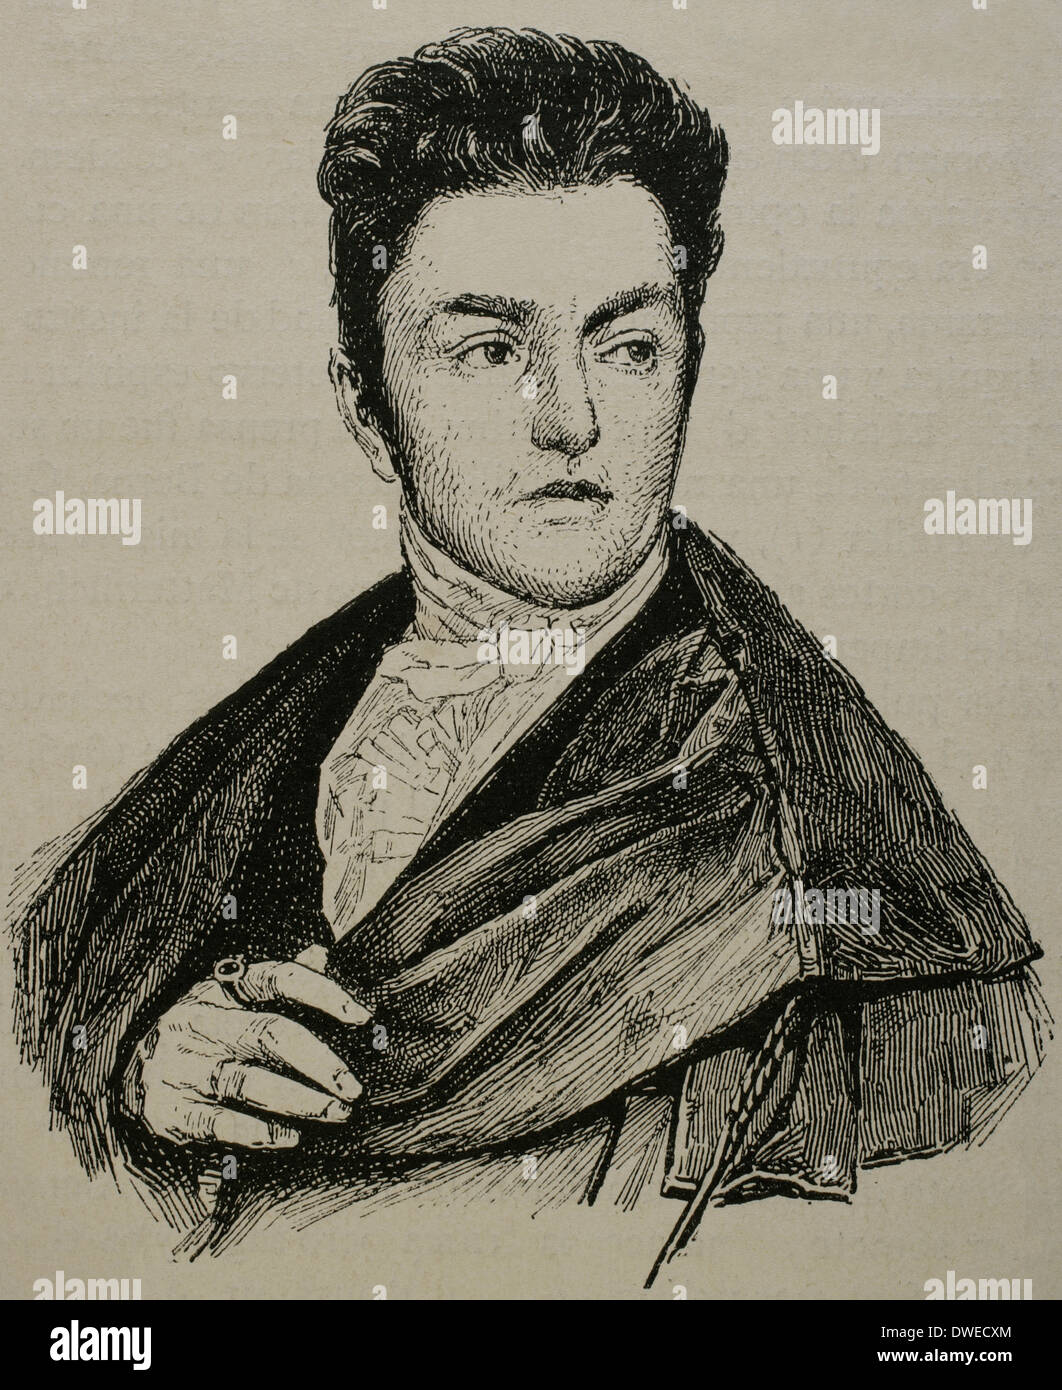 Maximiliano Emanuel von Lerchenfeld (1778-1843). Alemania. Grabado de Historia Universal, 1883. Foto de stock